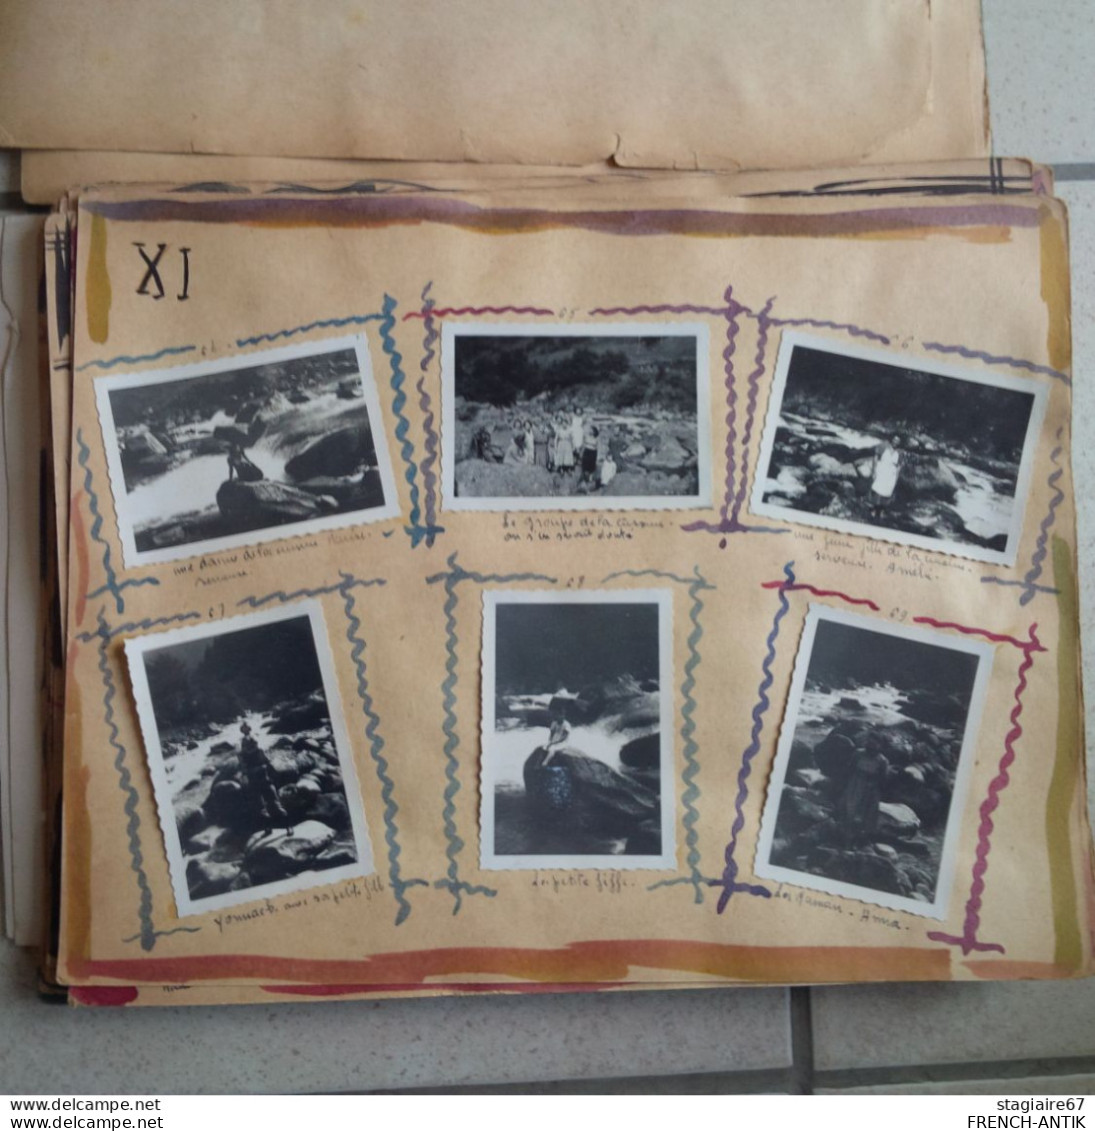 ALBUM PHOTO LE CAUTERETS 1949 SCOUTISME DEGUISEMENT CAMPING ENVIRON 170